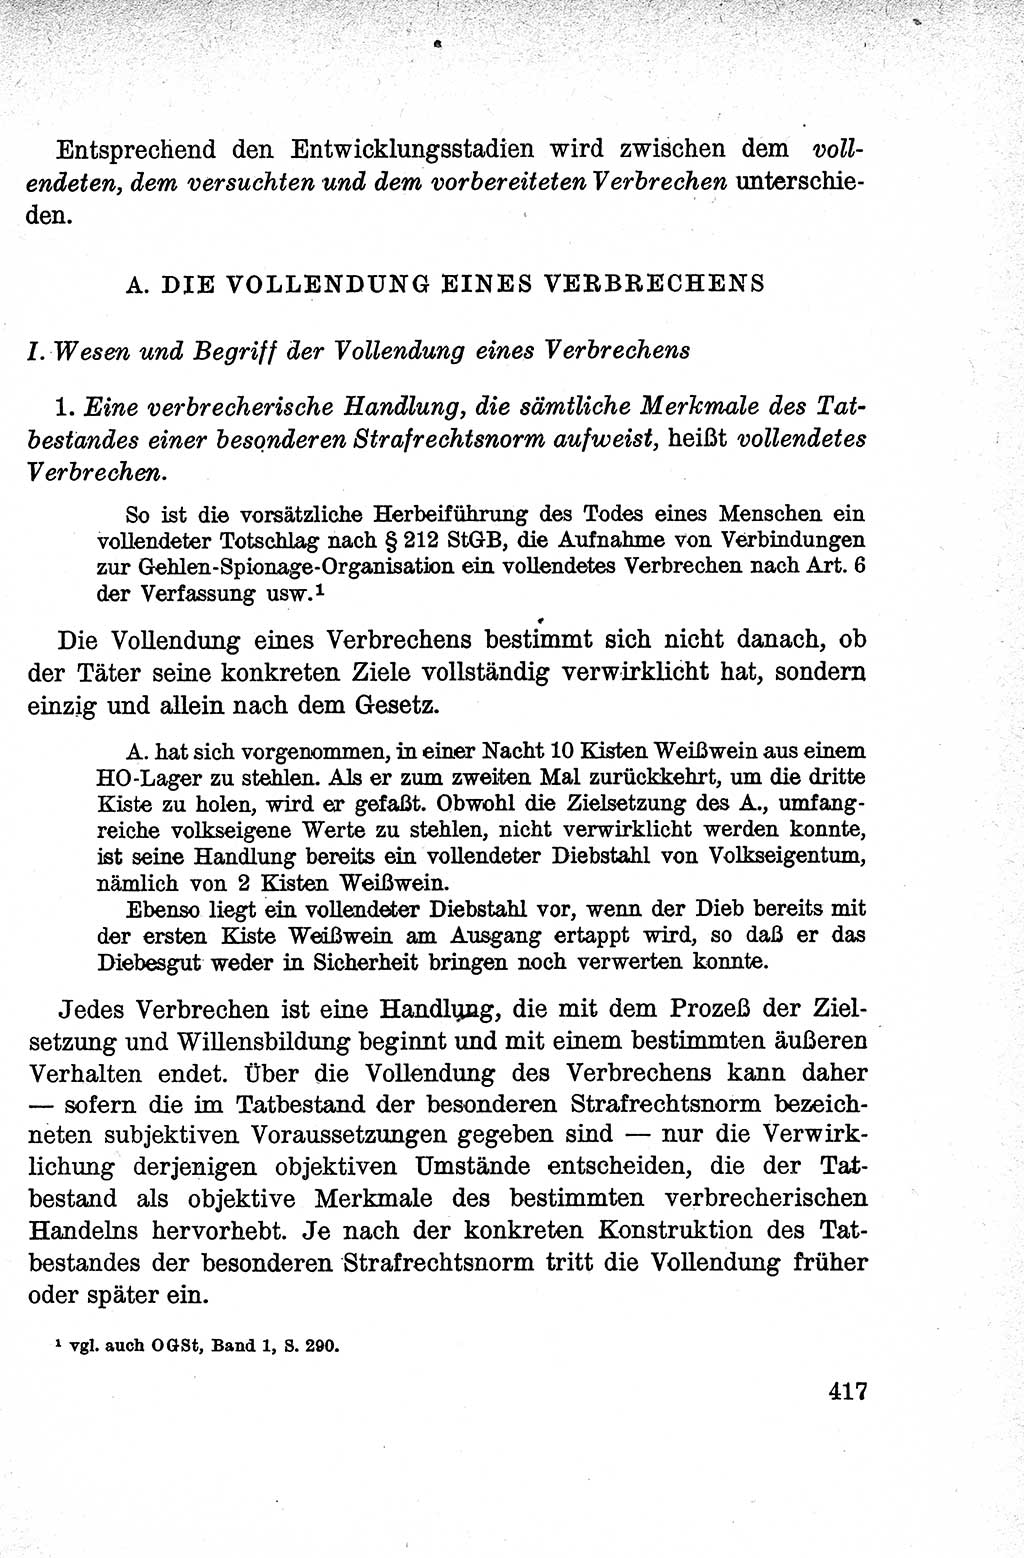 Lehrbuch des Strafrechts der Deutschen Demokratischen Republik (DDR), Allgemeiner Teil 1959, Seite 417 (Lb. Strafr. DDR AT 1959, S. 417)